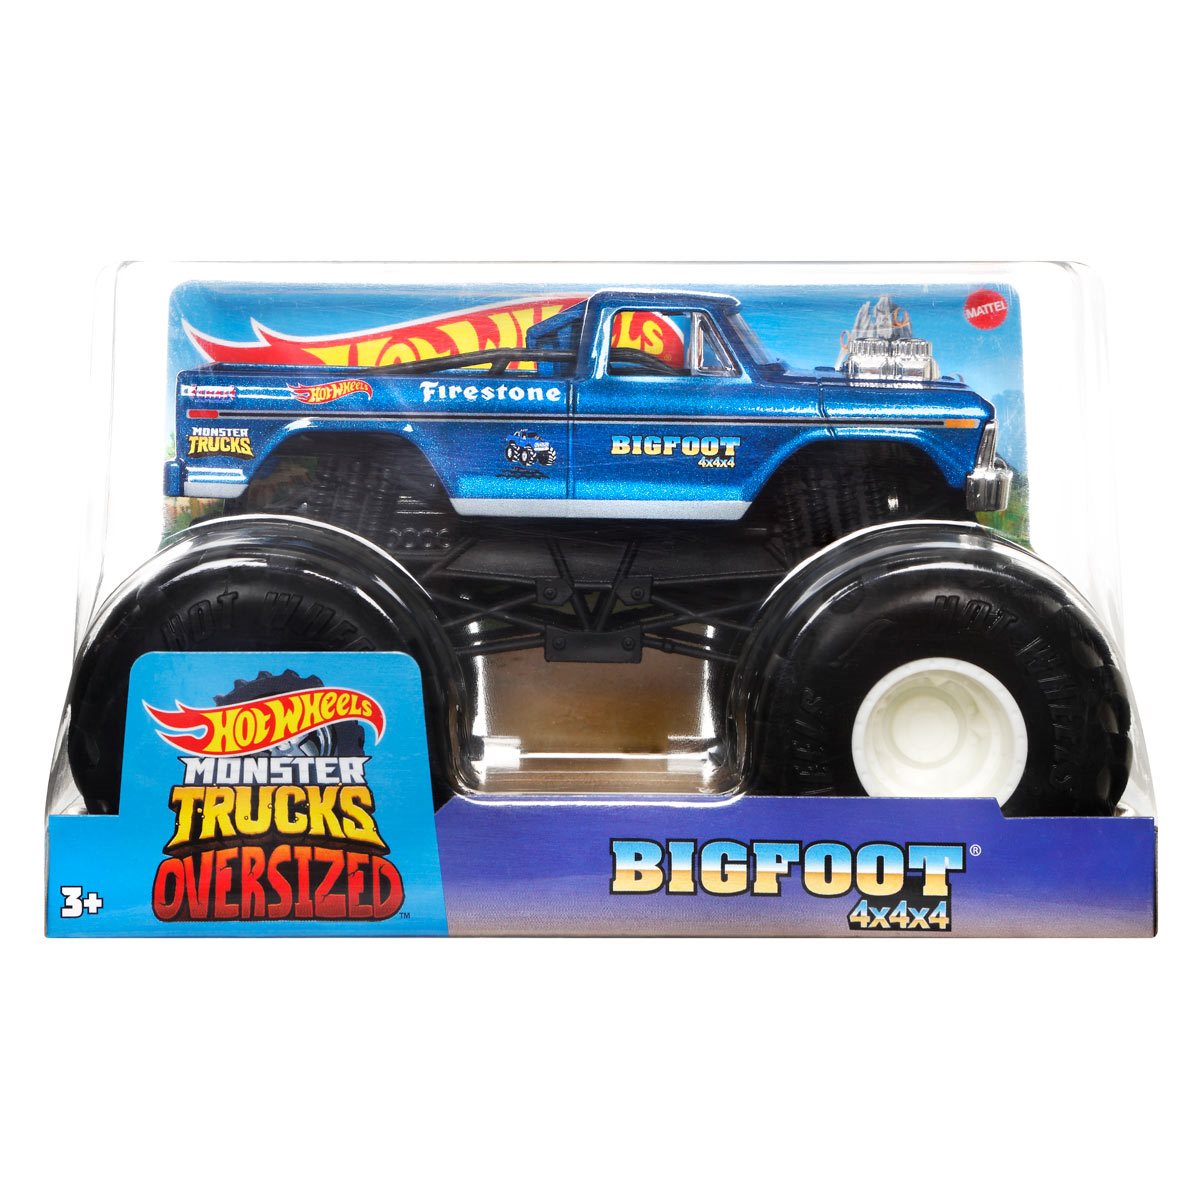  Hot Wheels Monster Trucks, Oversized Monster Truck, 1